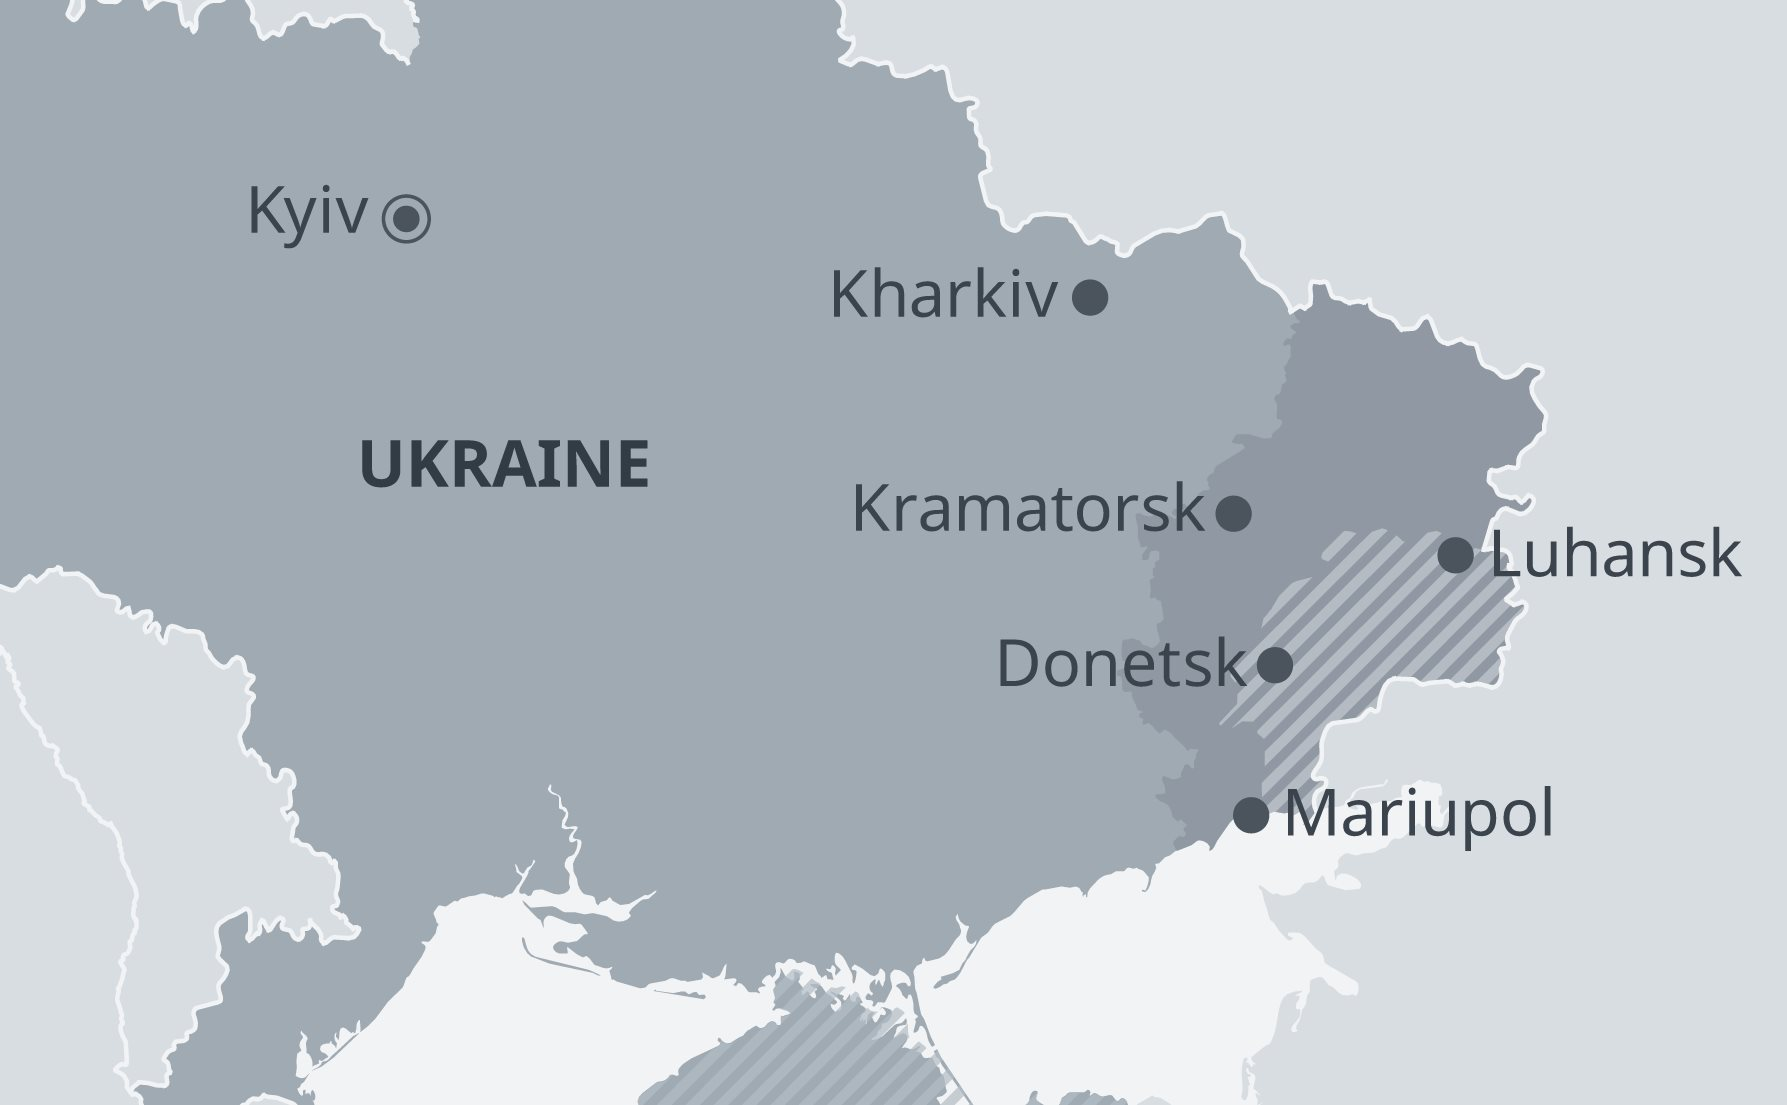 Tại sao khu vực Donbas lại quan trọng đối với Nga? - Ảnh 2.